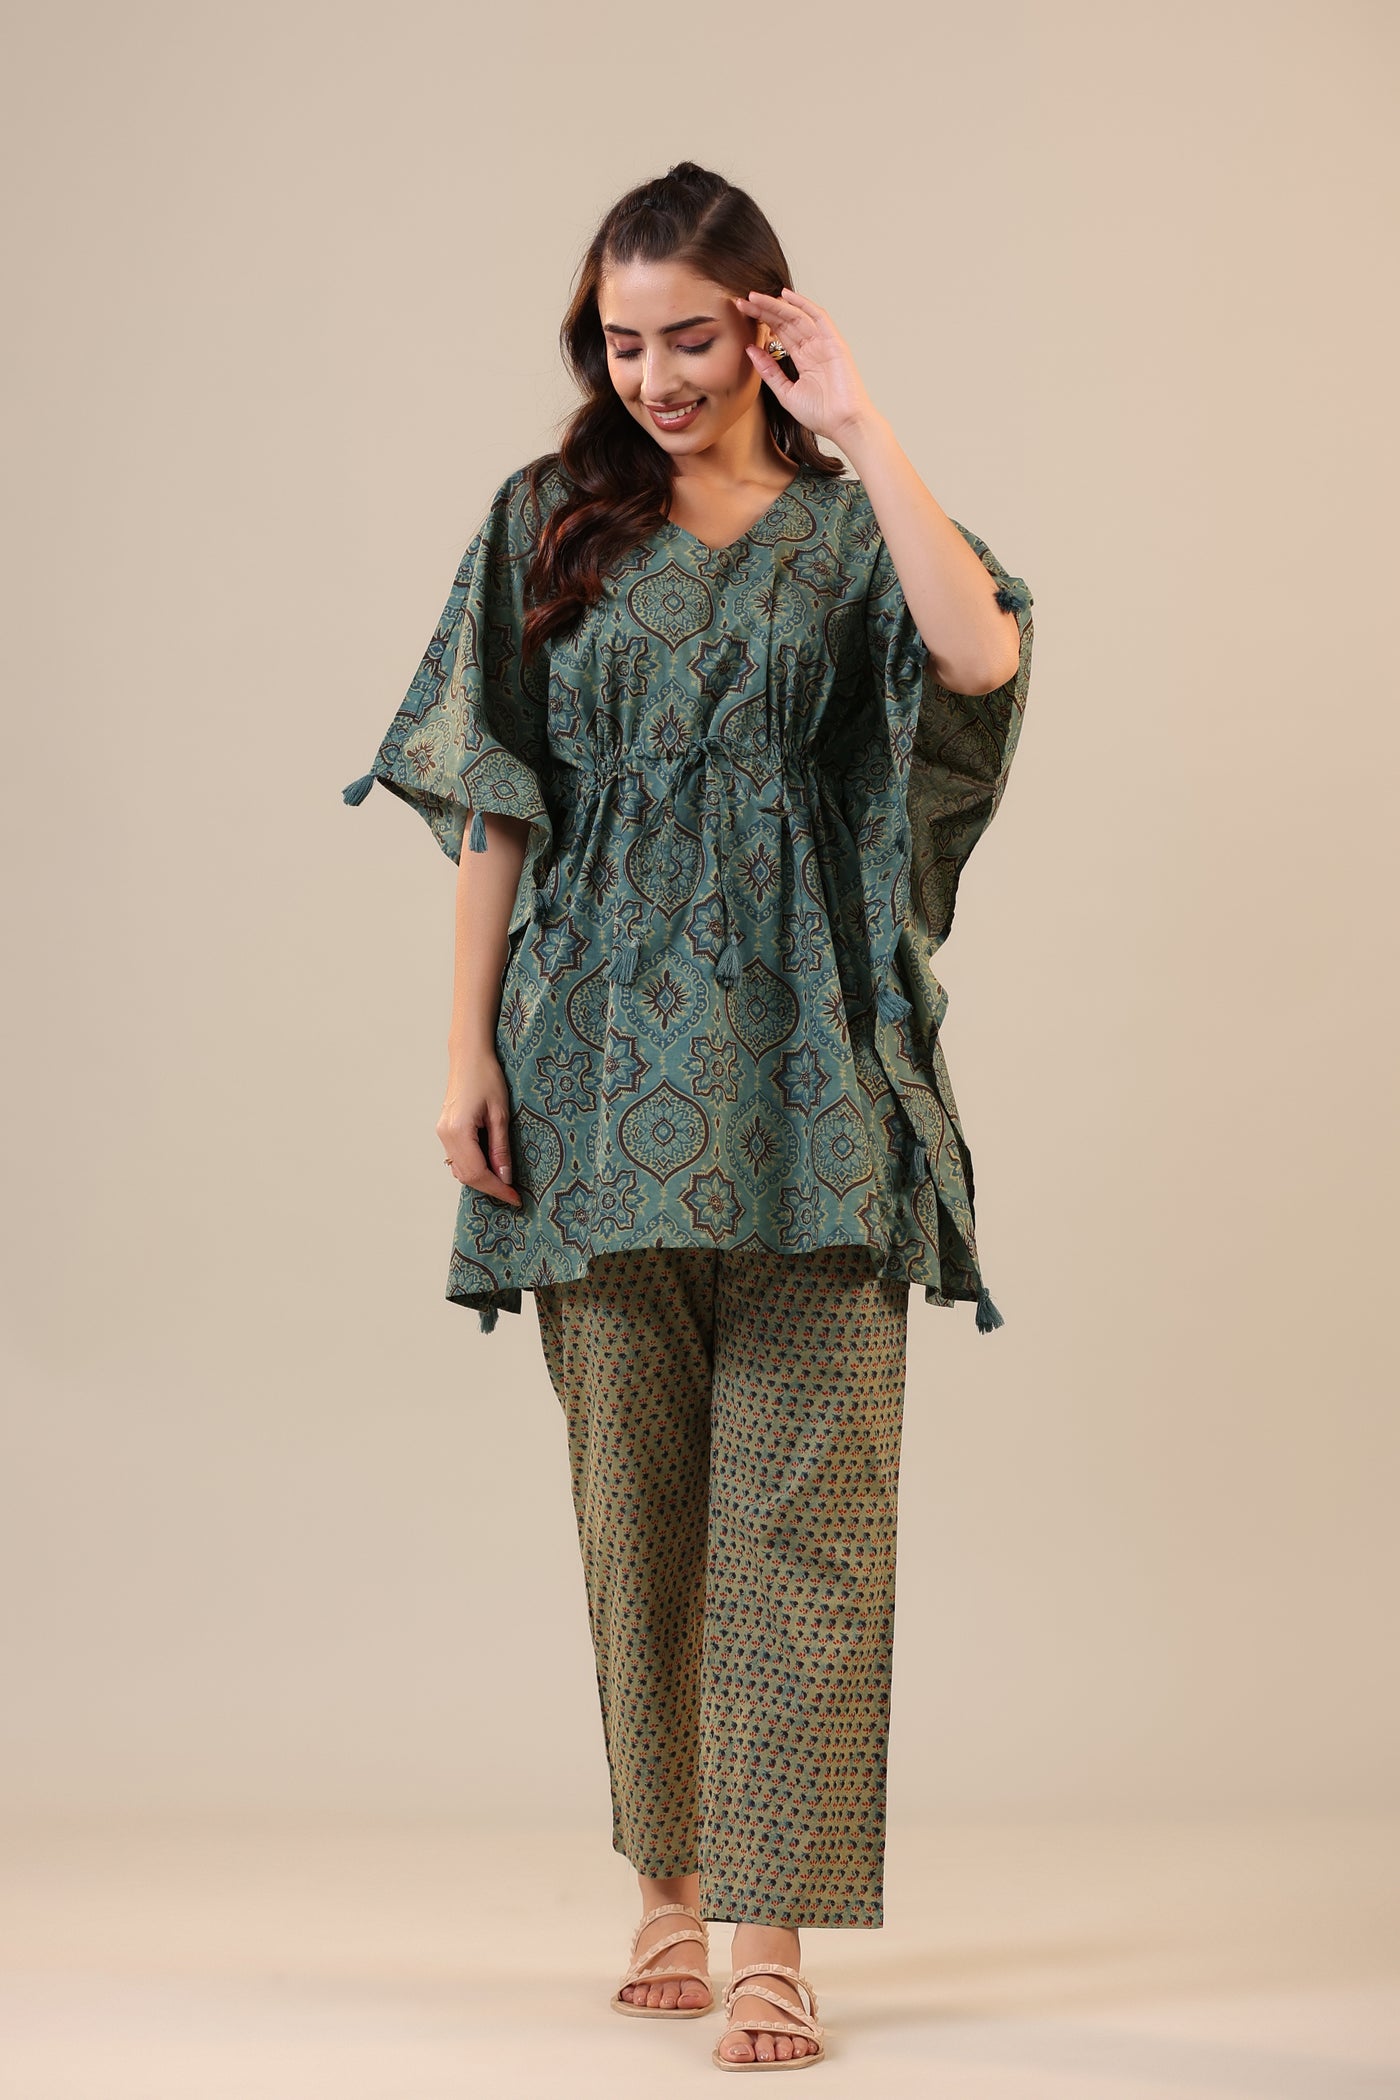 Ajrakh with Booti on Green Cotton Kaftan Pajama set